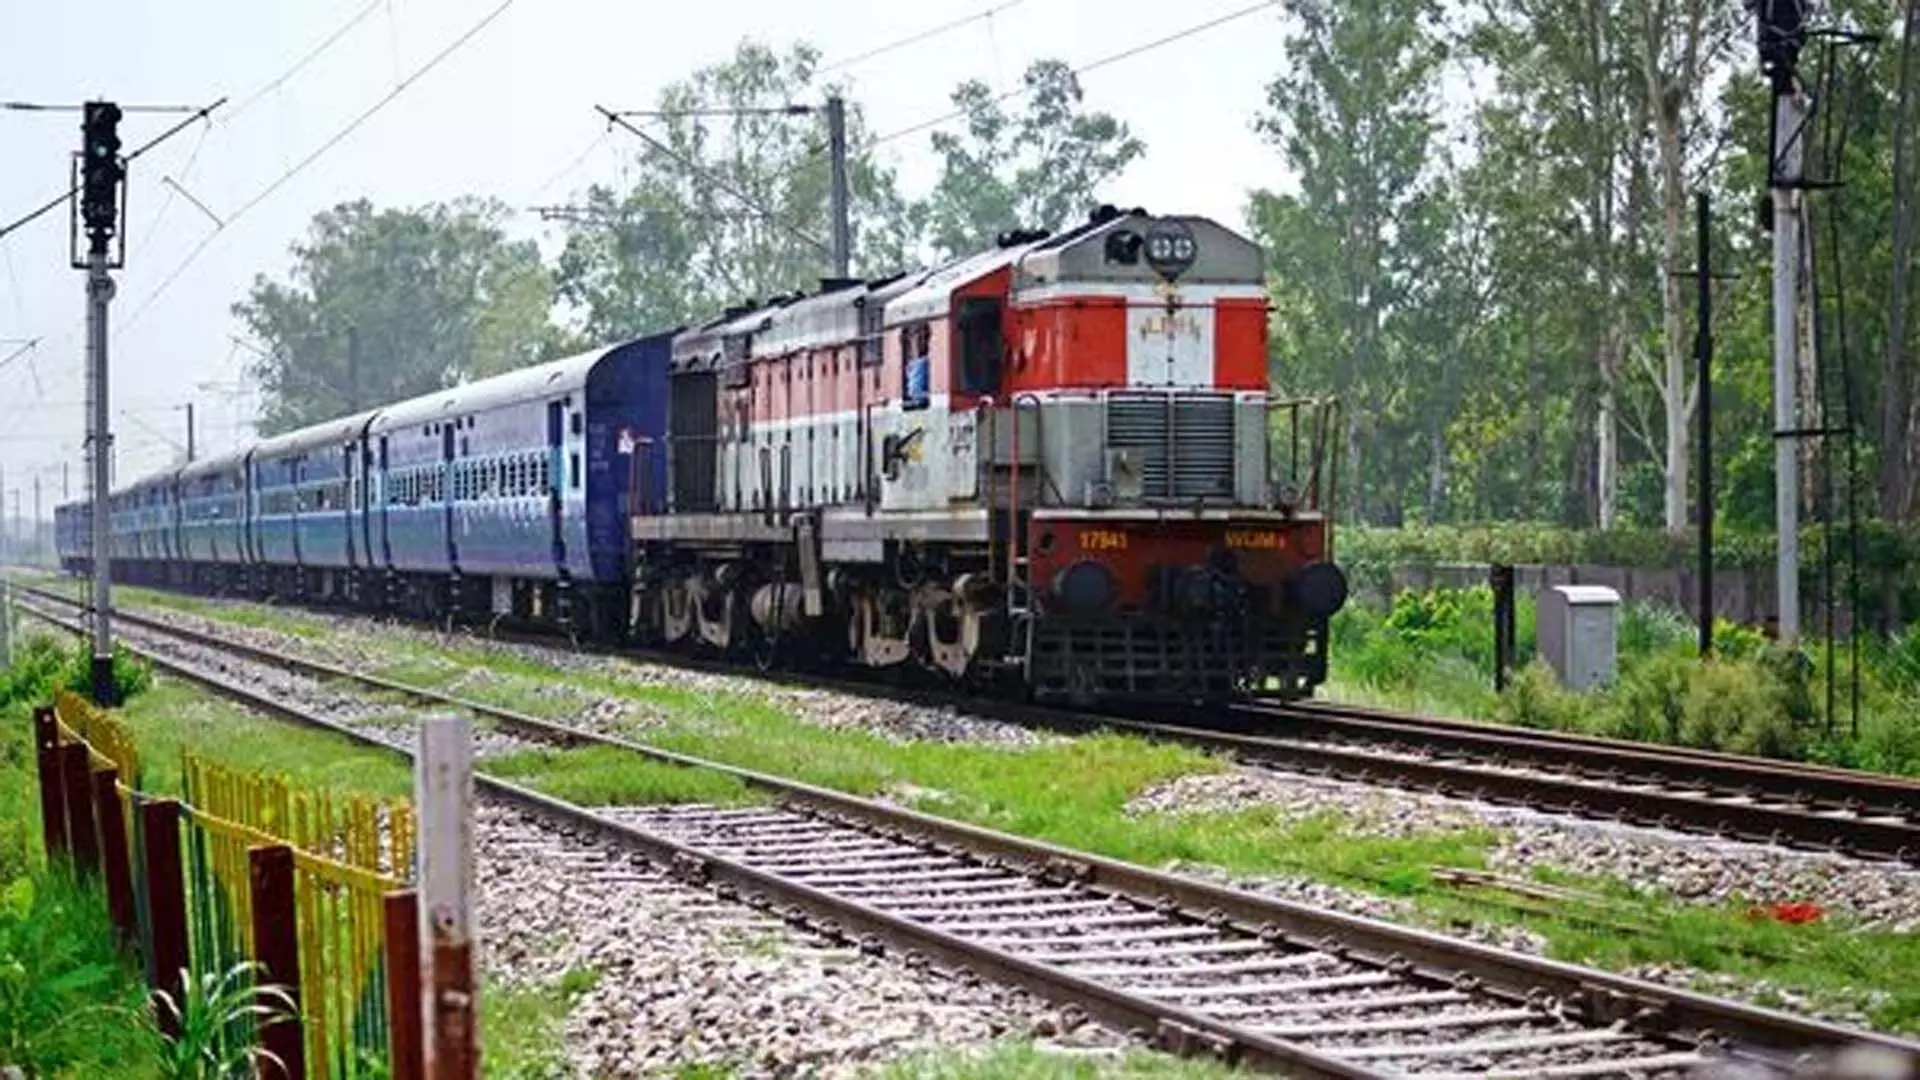 हैदराबाद लोकल ट्रेन के यात्री ऑनलाइन टिकटिंग सिस्टम को लेकर शिकायत